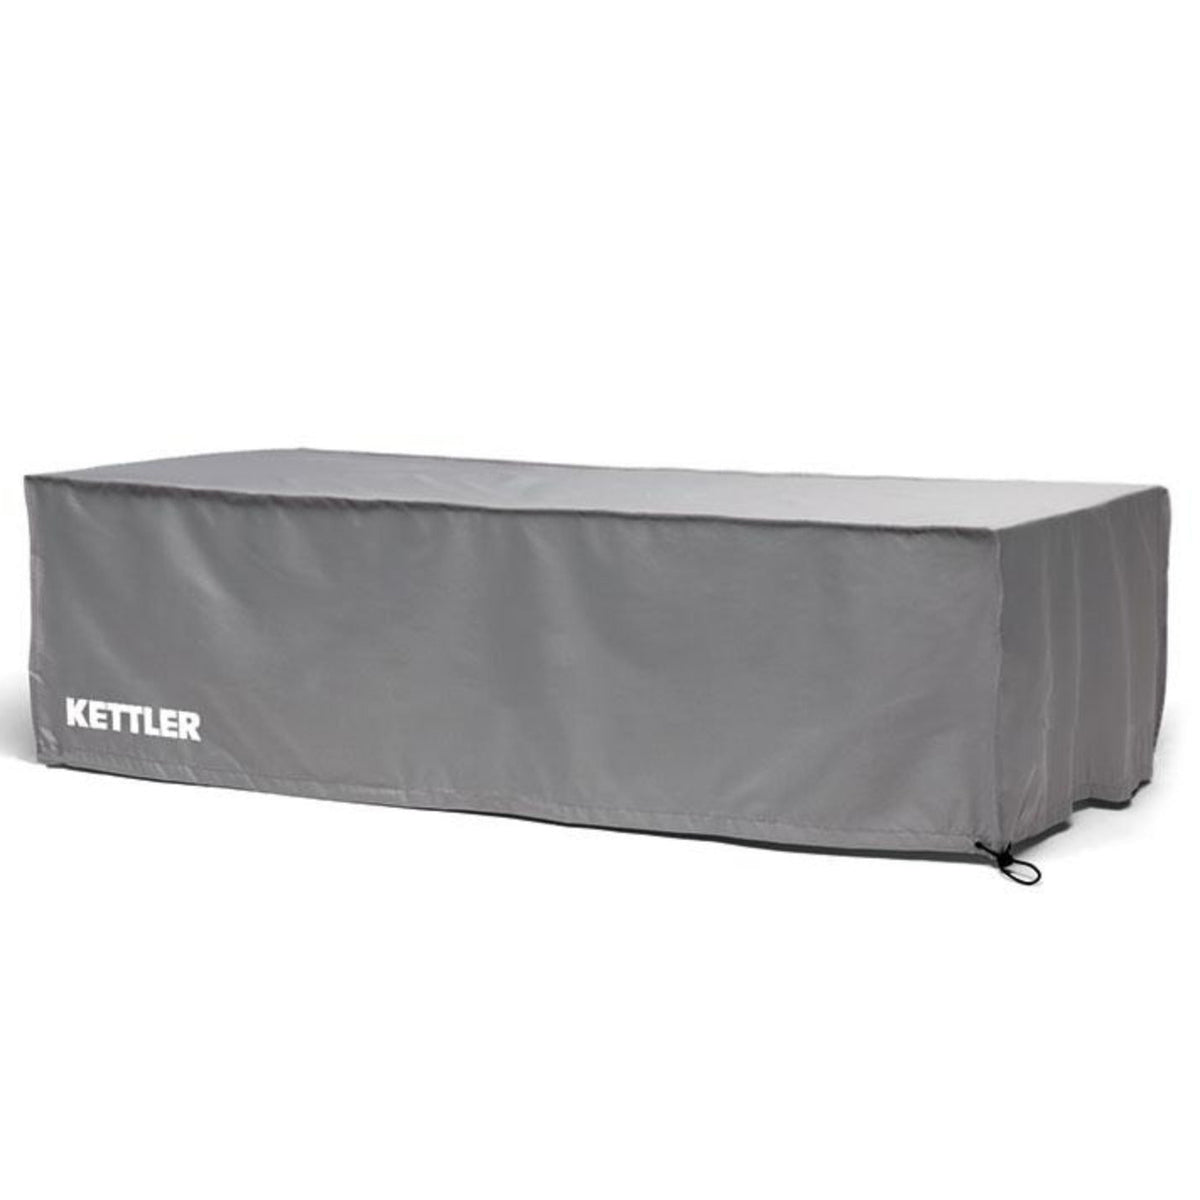 Kettler Protective Garden Furniture Cover for Elba Sun Lounger